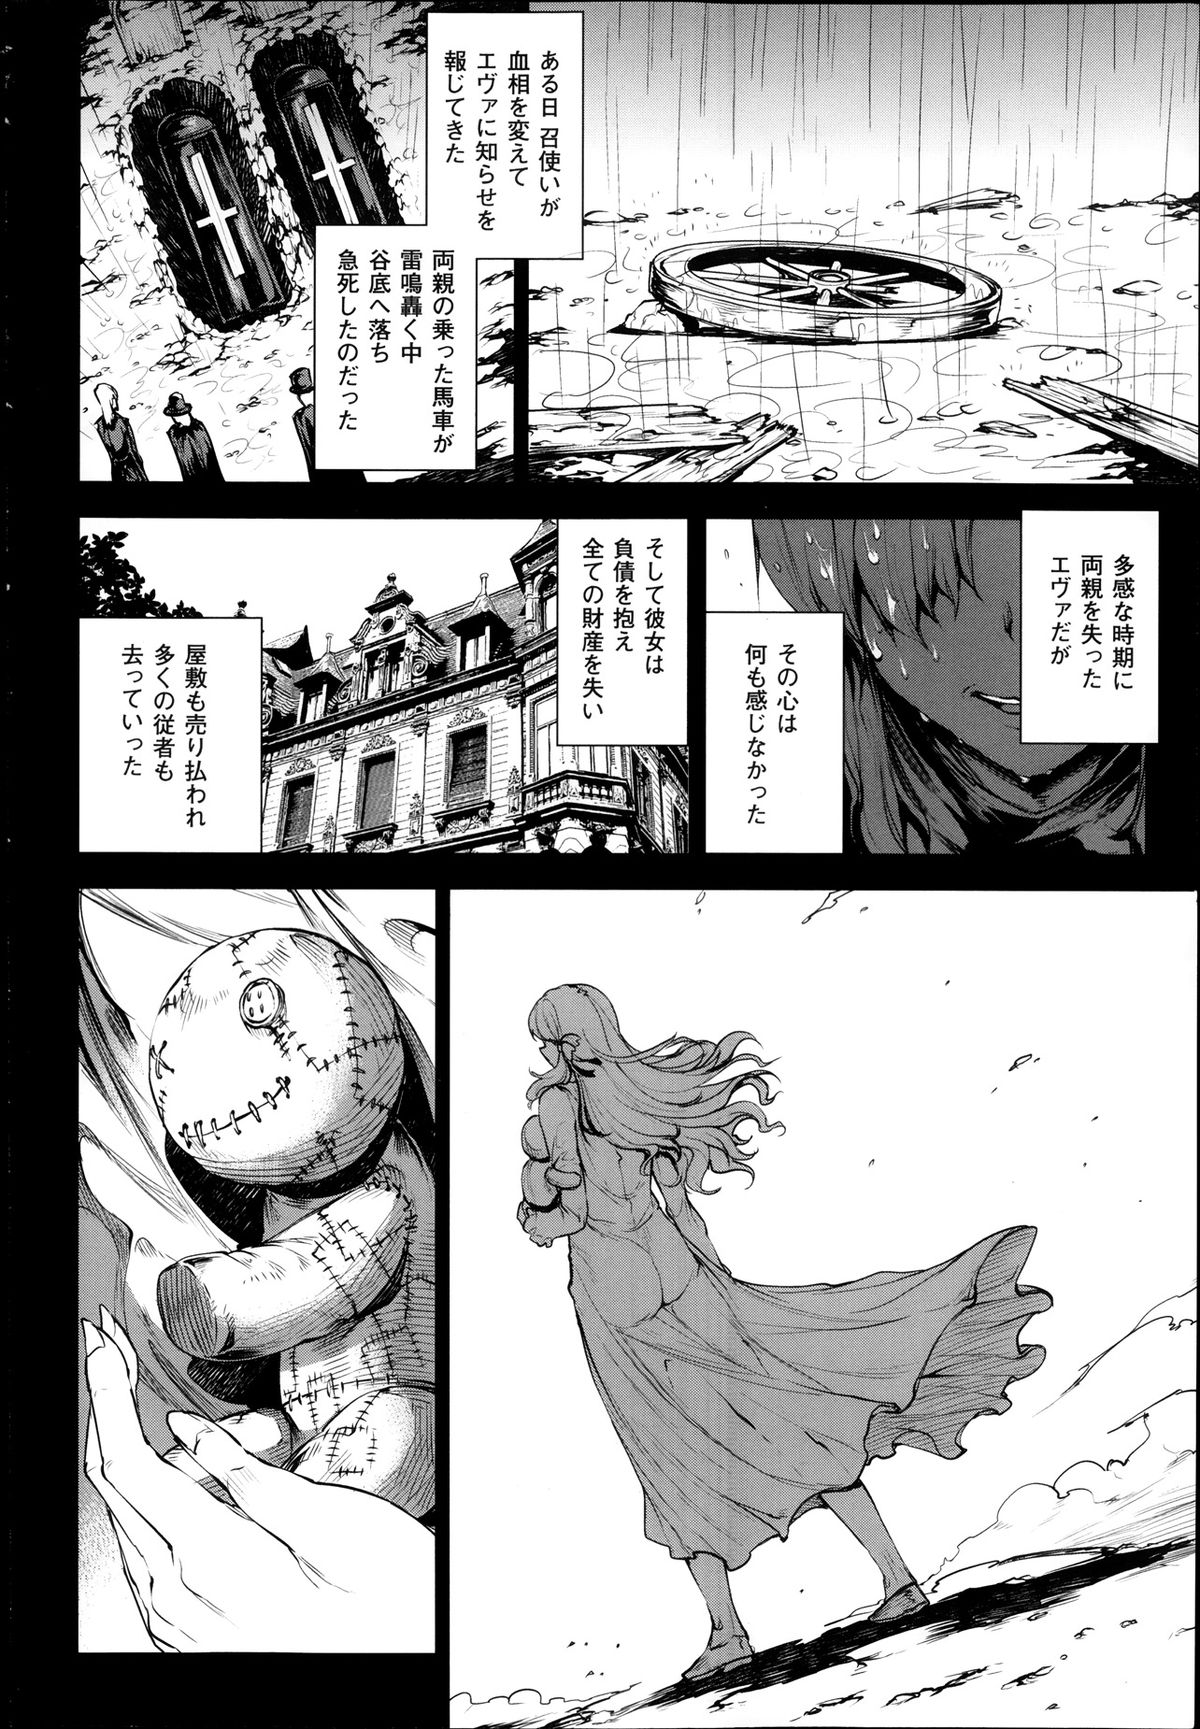 [エレクトさわる] 神曲のグリモワール―PANDRA saga 2nd story― 第07話~第9.5話